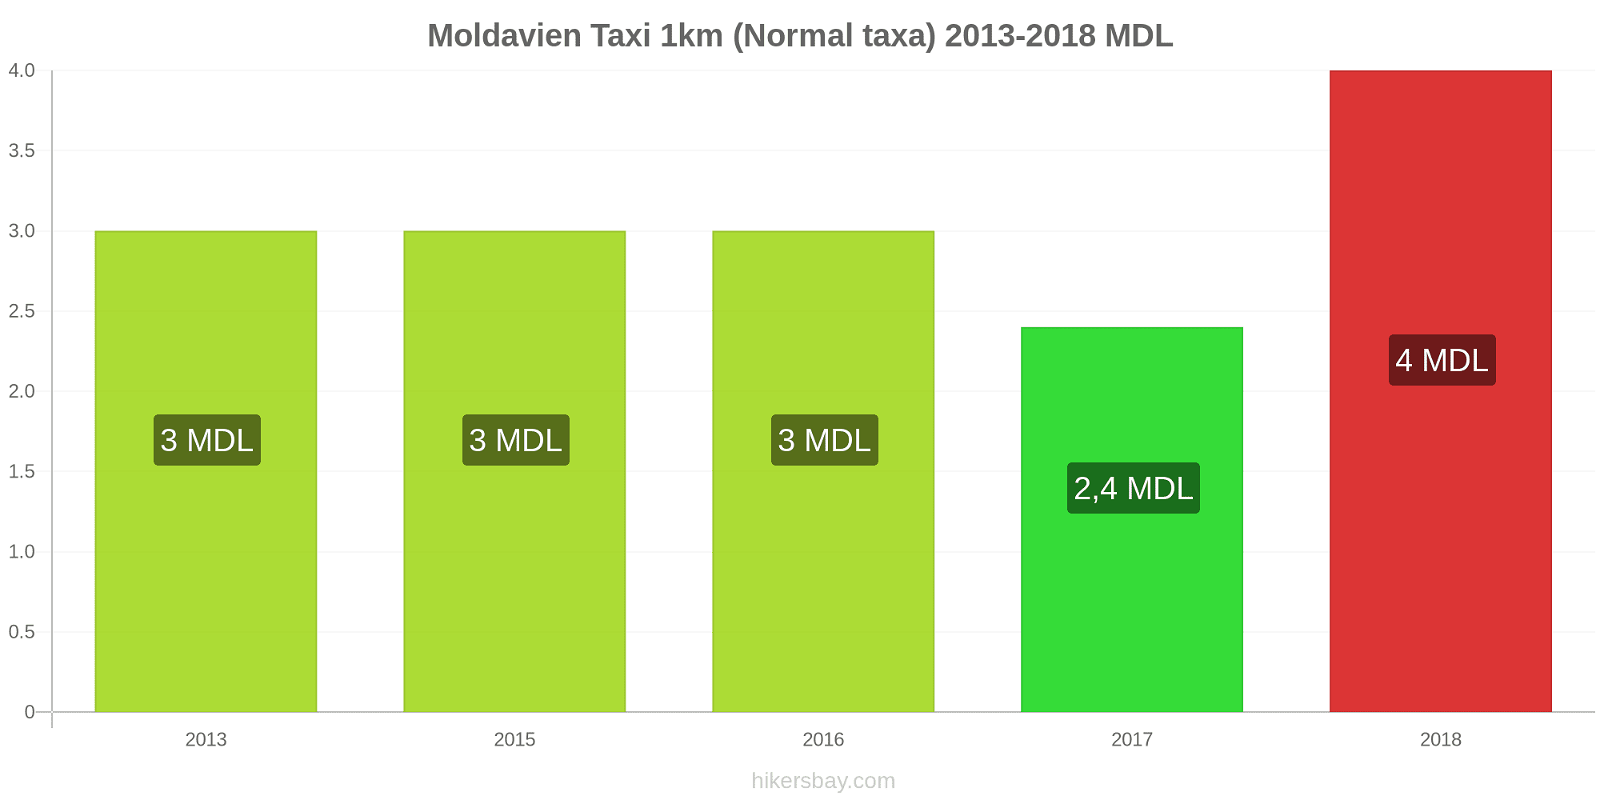 Moldavien prisändringar Taxi 1km (Normal taxa) hikersbay.com